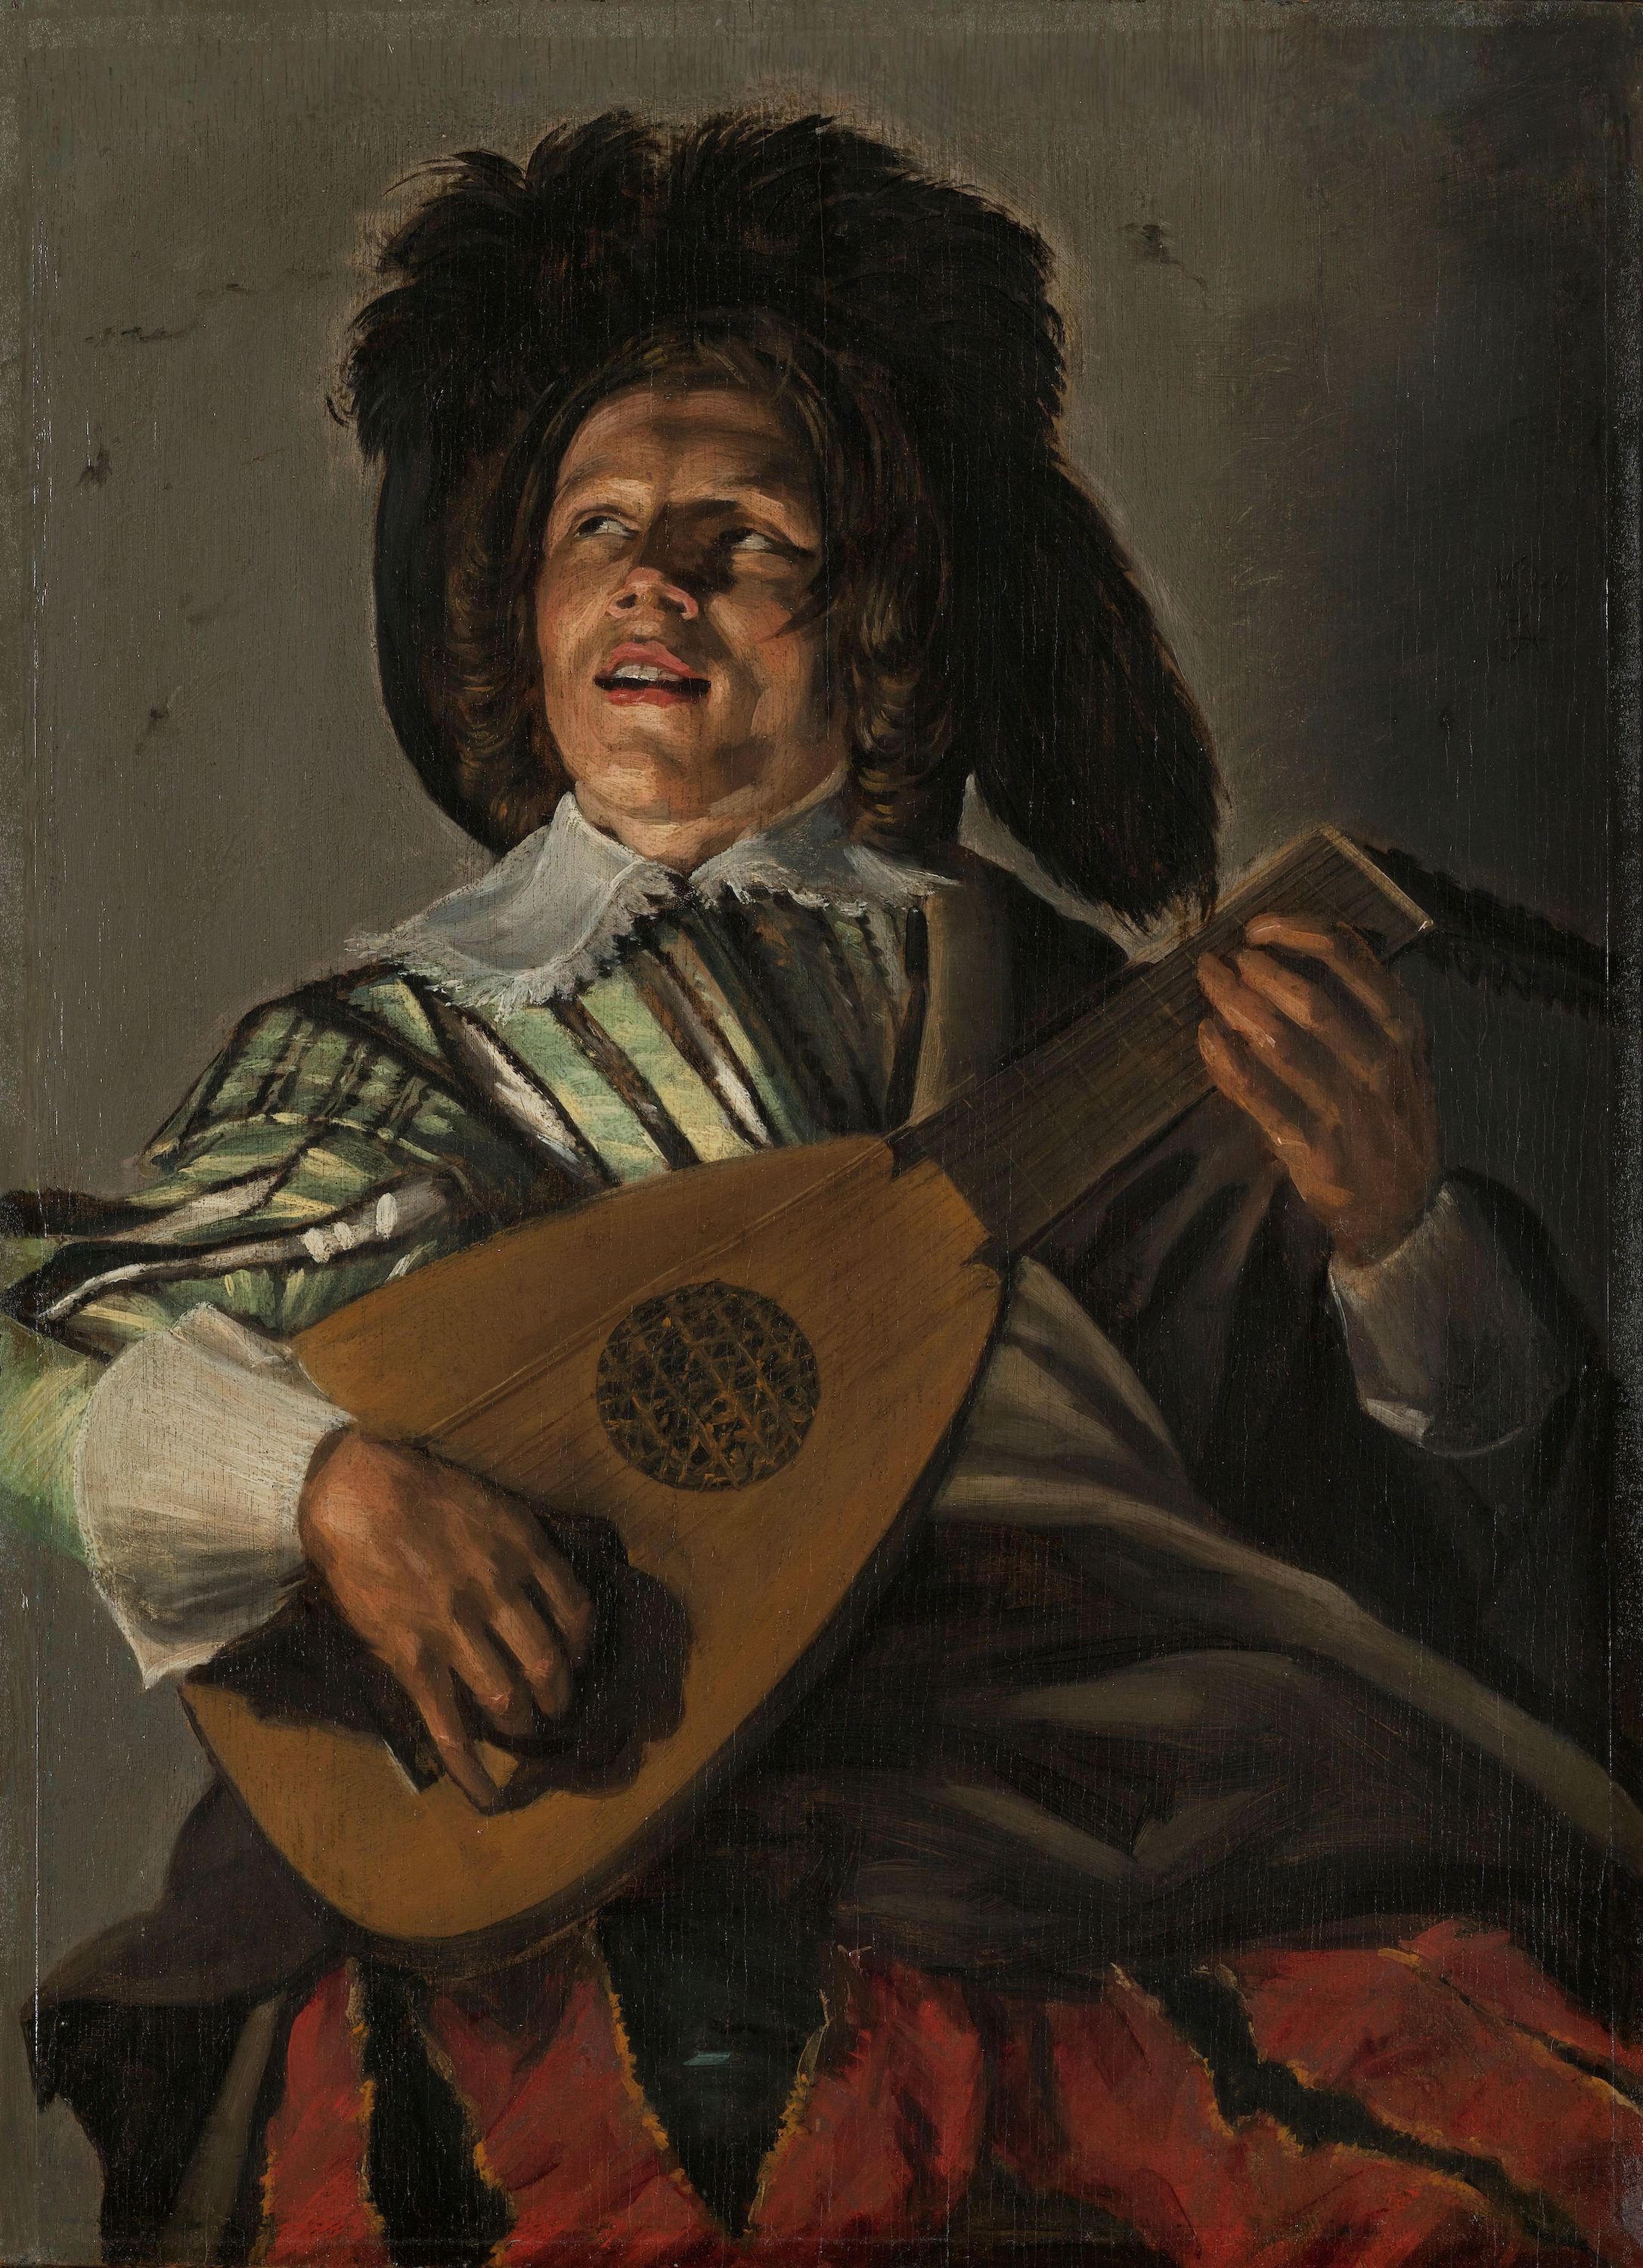 La serenata by Judith Leyster - 1629 - 45,5 cm × 35 cm Rijksmuseum